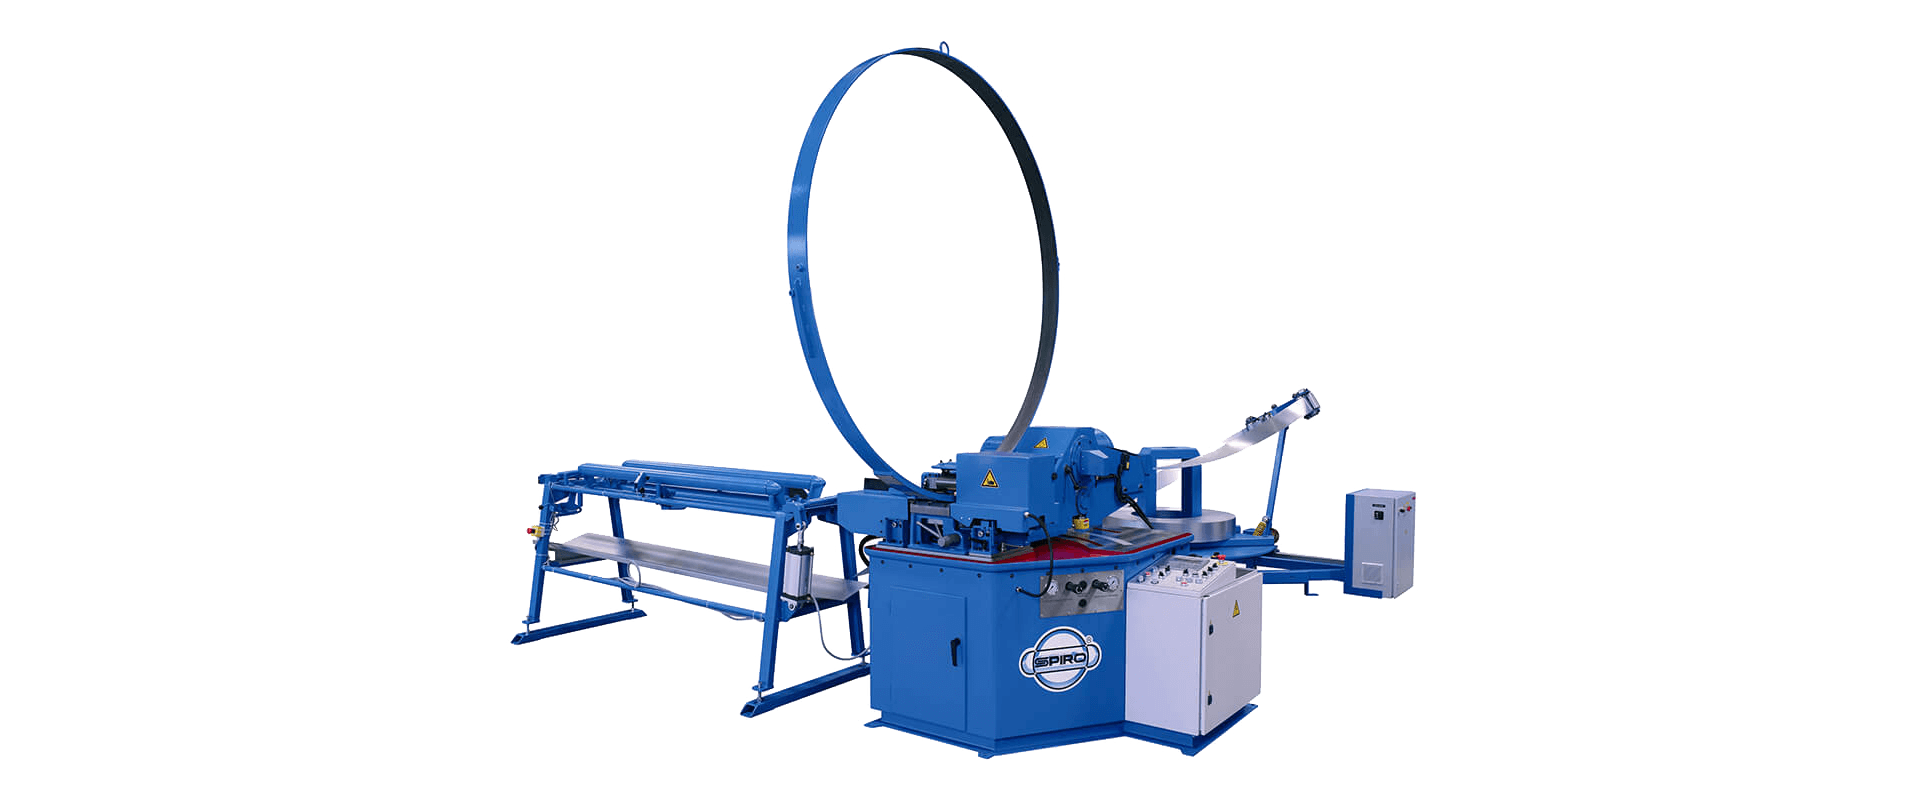 Spiral Helix model tubeformer 2020 spiral duct machine